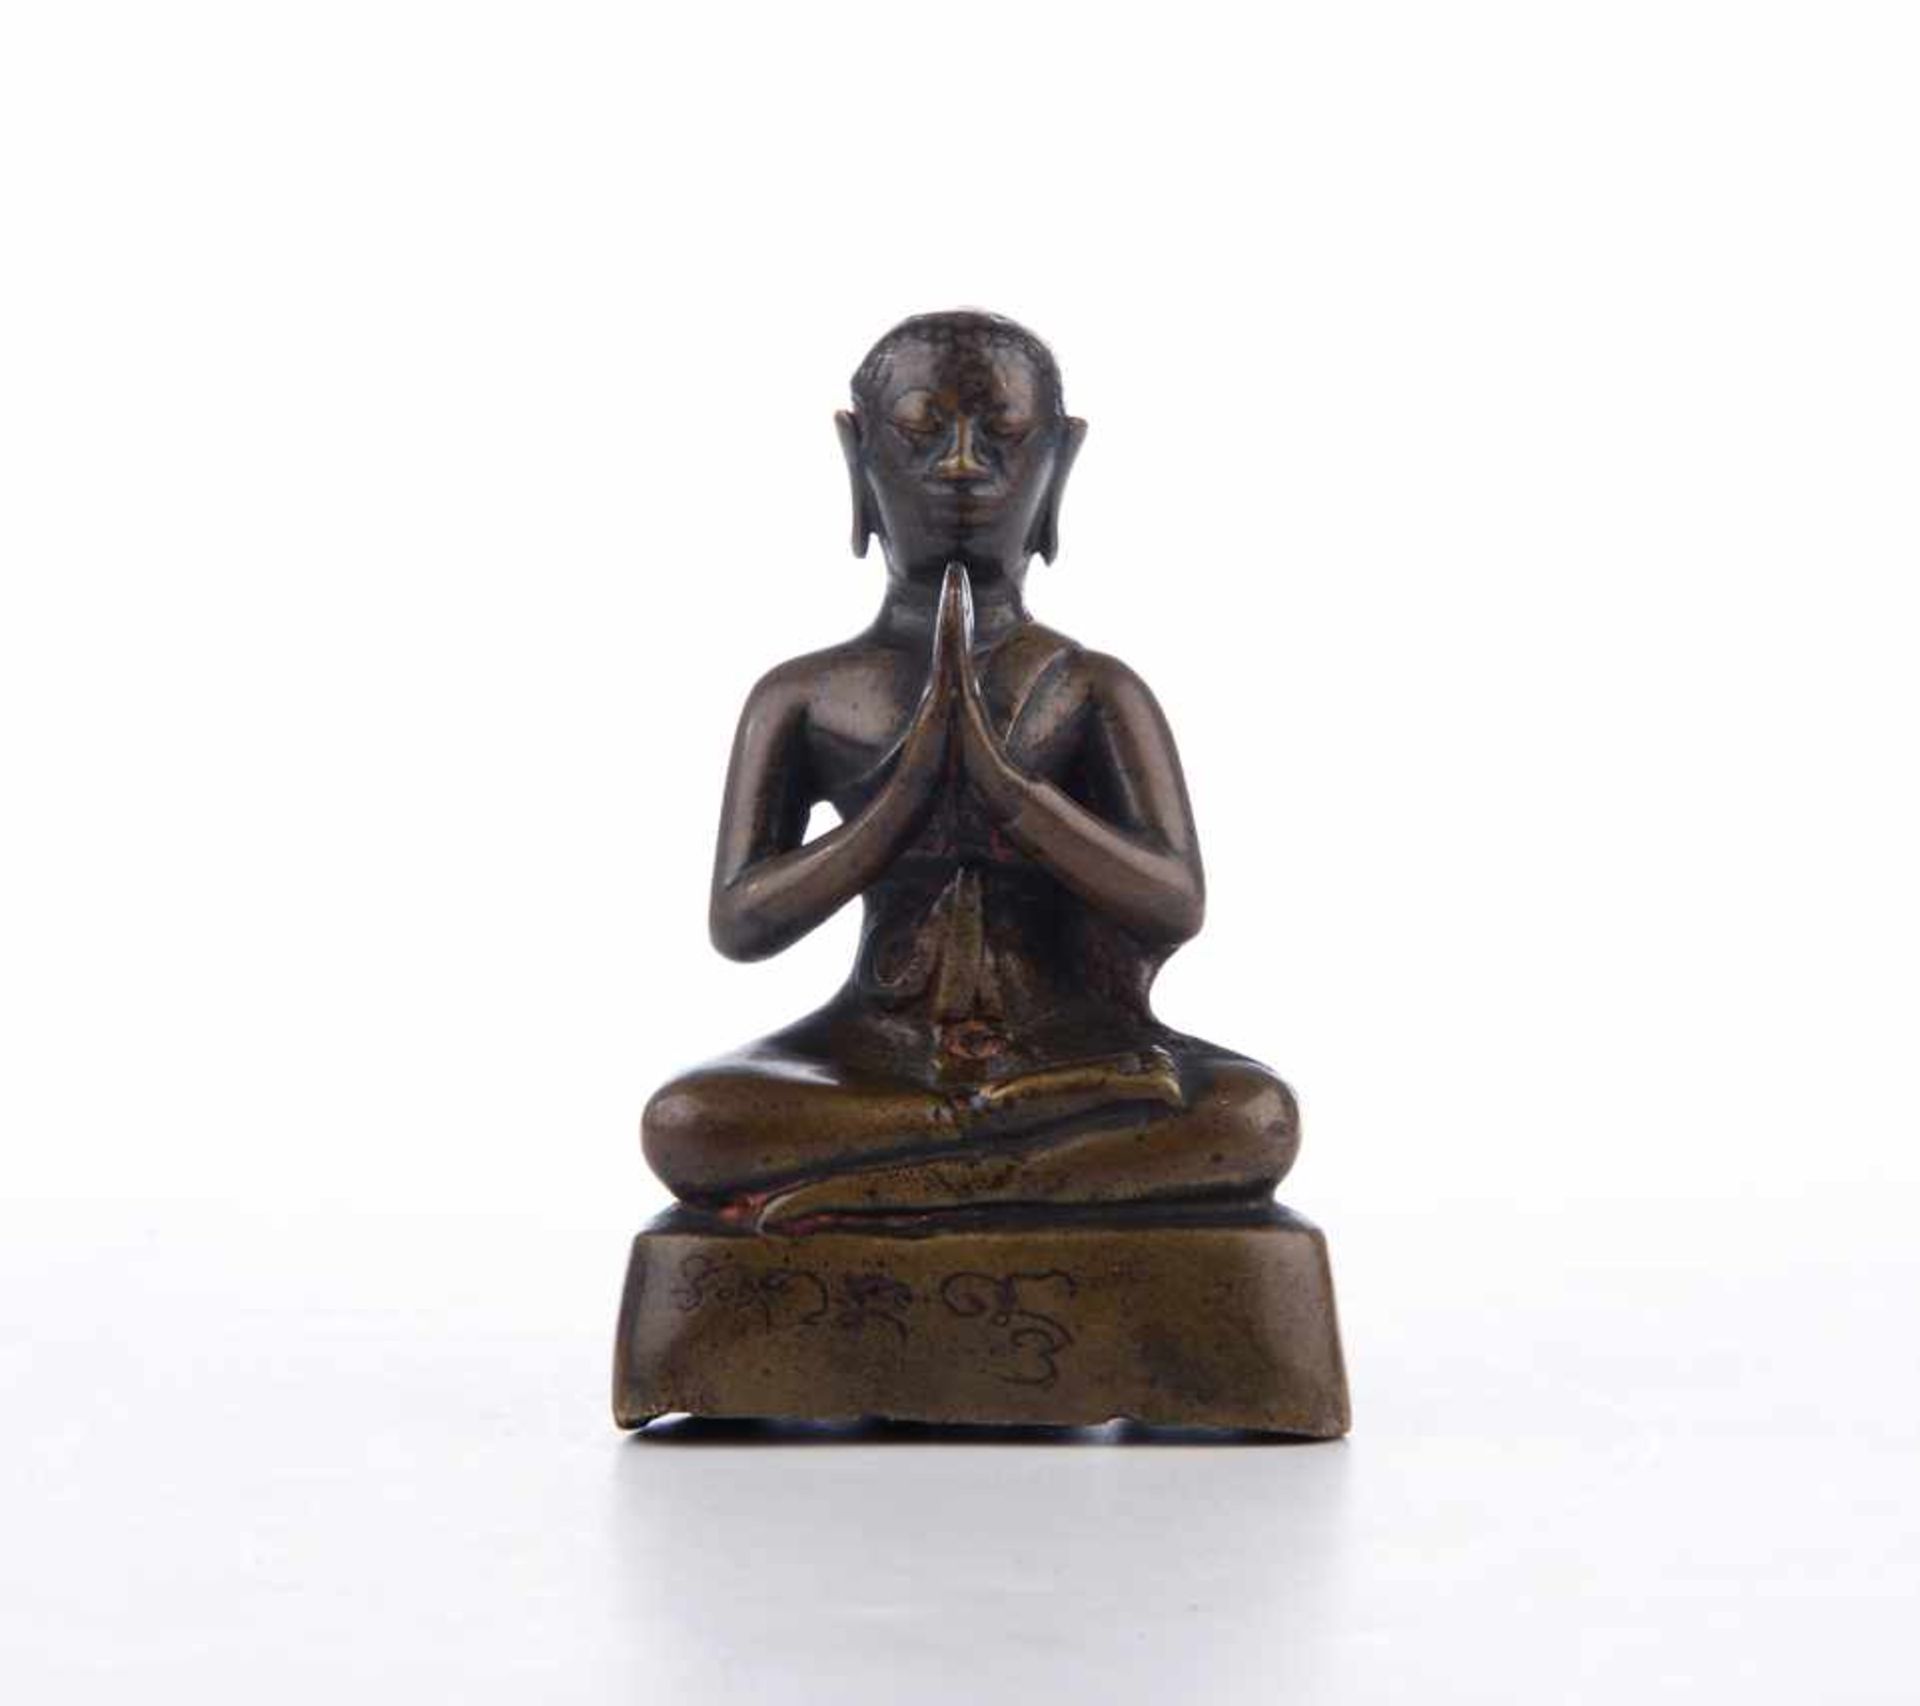 Betender Mönch. Bronze, Tibet / Nepal. Wohl frühes 19. Jahrhundert. Vorderseitig bezeichnet. Maße